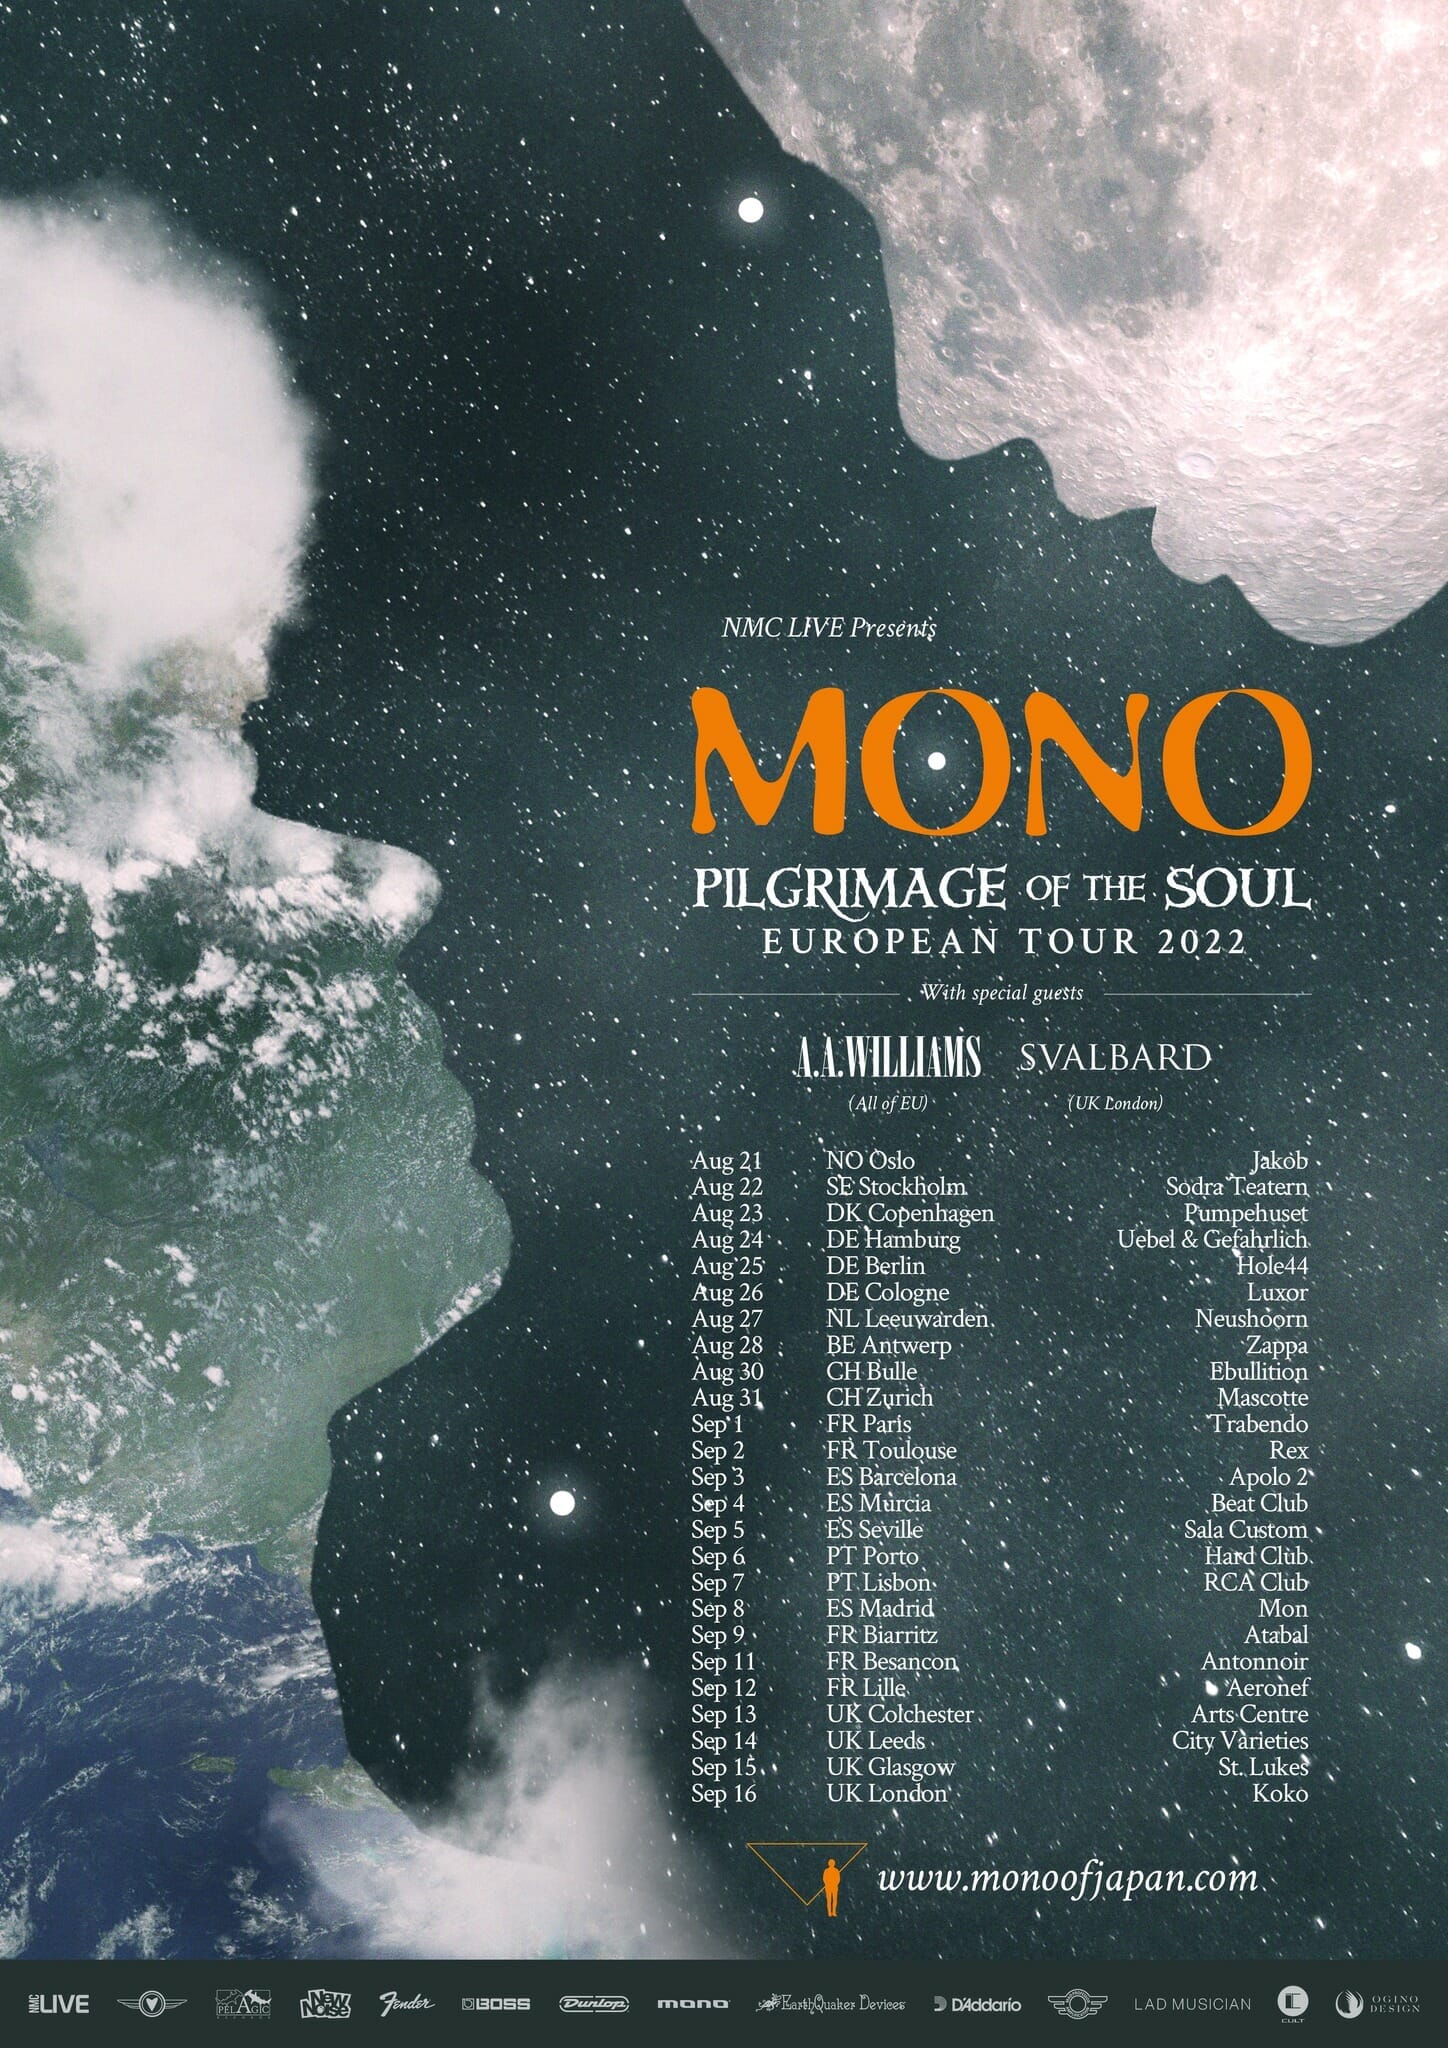 Plakat für die Tour 2022 der japanischen Band Mono